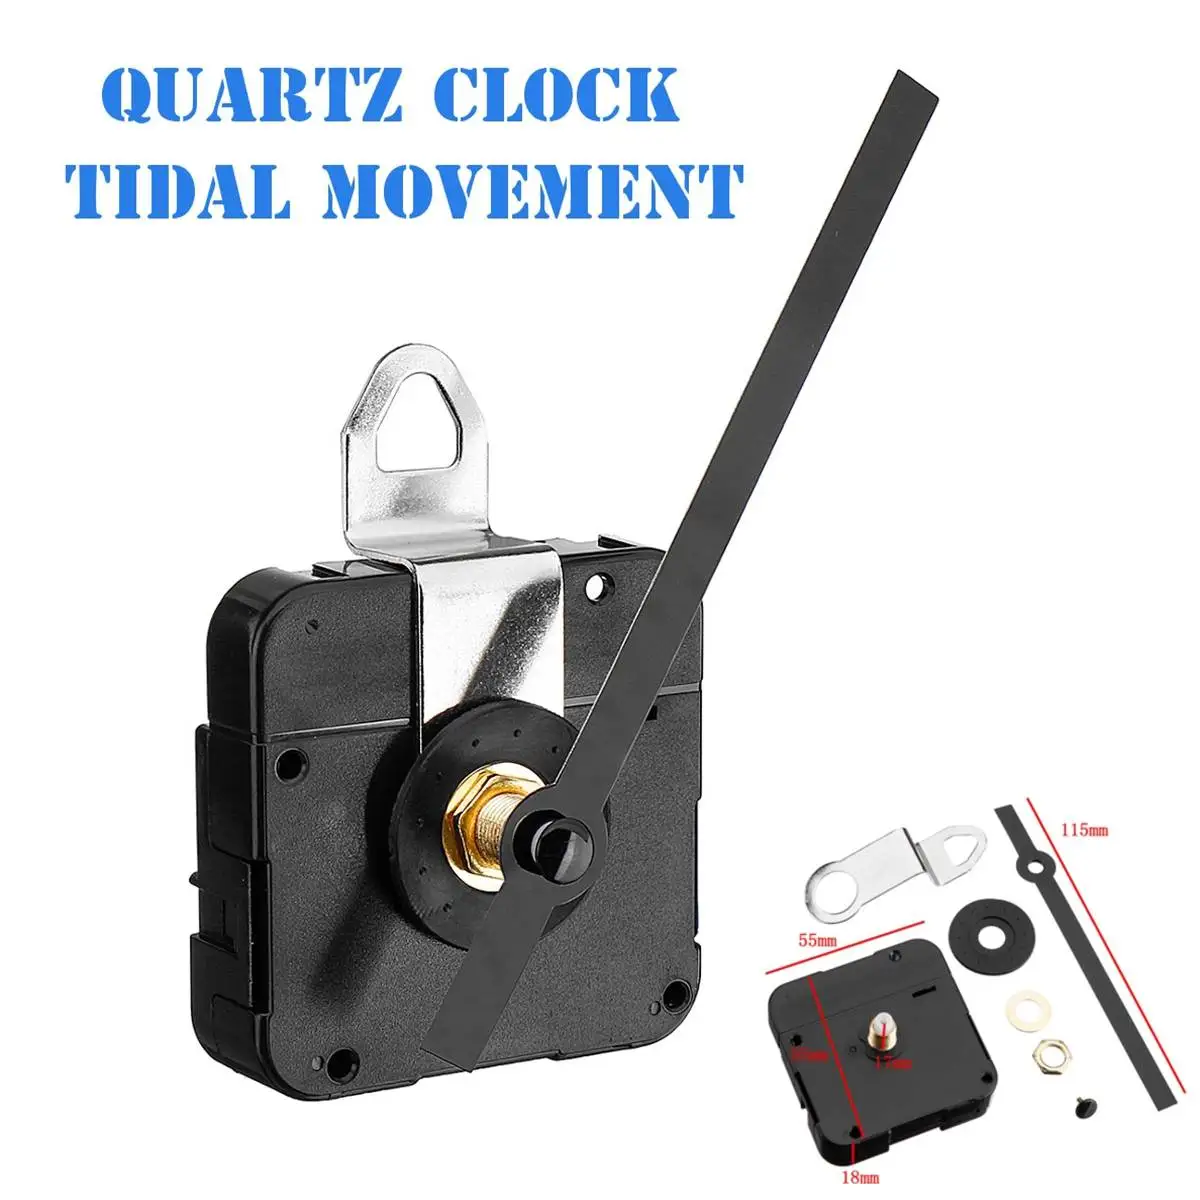 2 шт. для Tide кварцевые часы с будильником механизм двигателя 115 мм руки установки классический висит черный кварц наручные часы, настенные часы